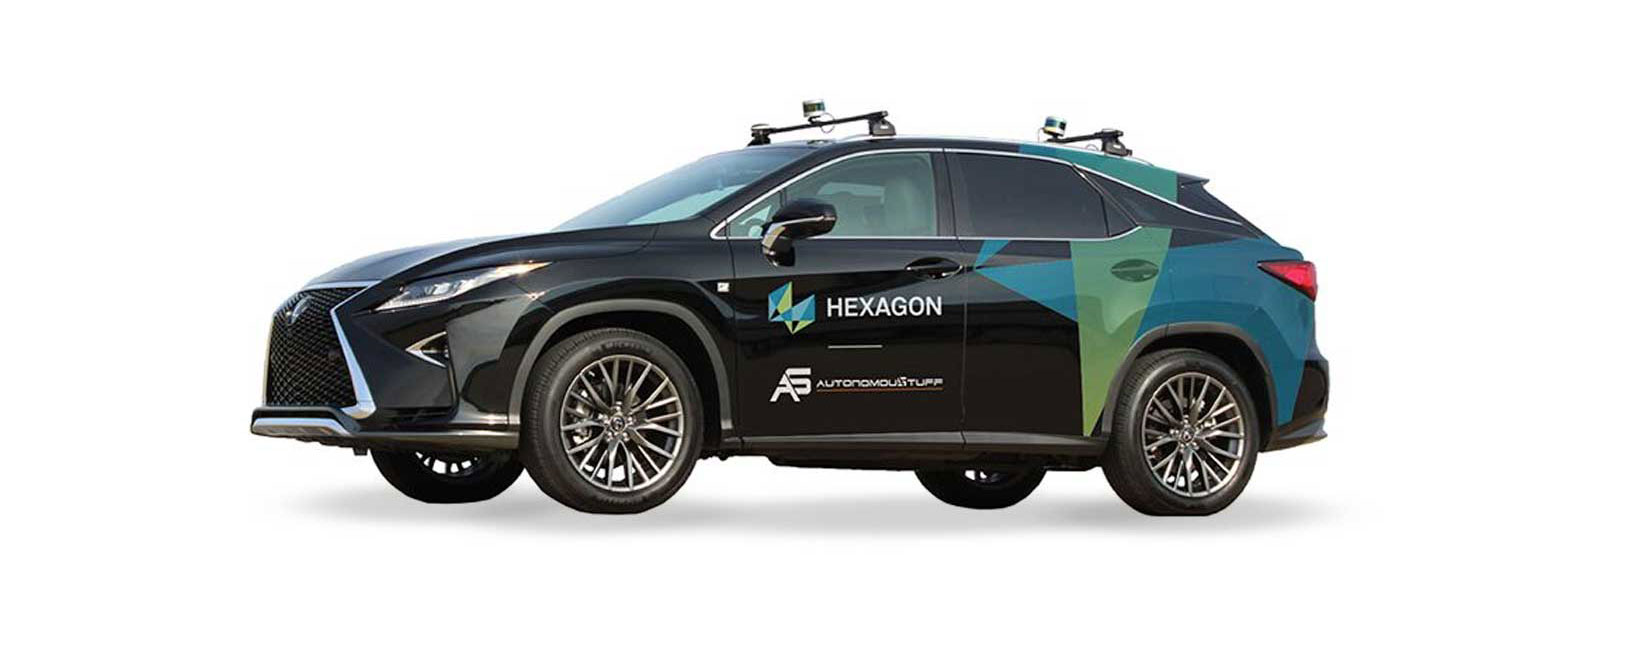 Vista del vehículo de la marca Hexagon con capacidades de conducción por cable